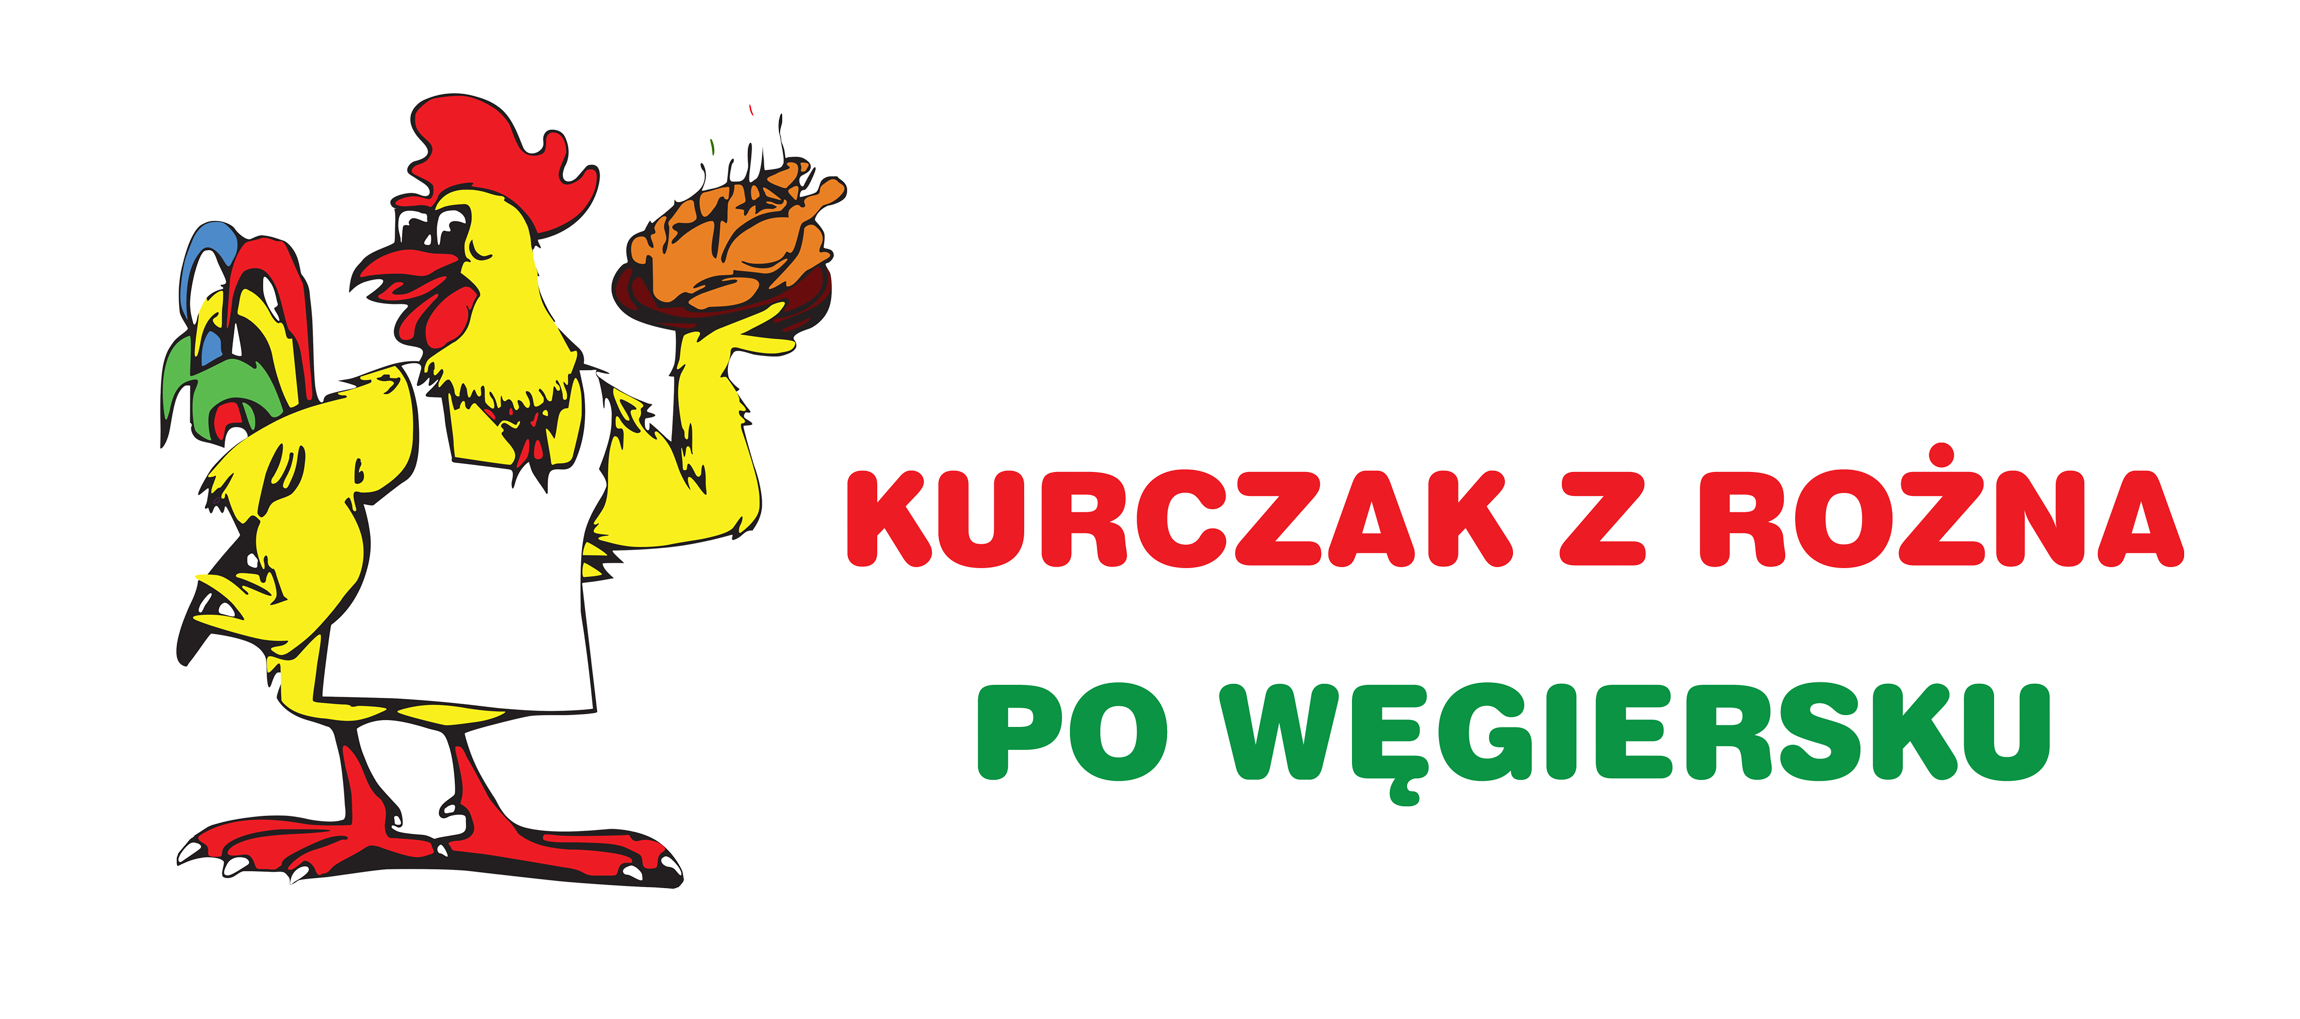 Kurczak z rożna po węgiersku